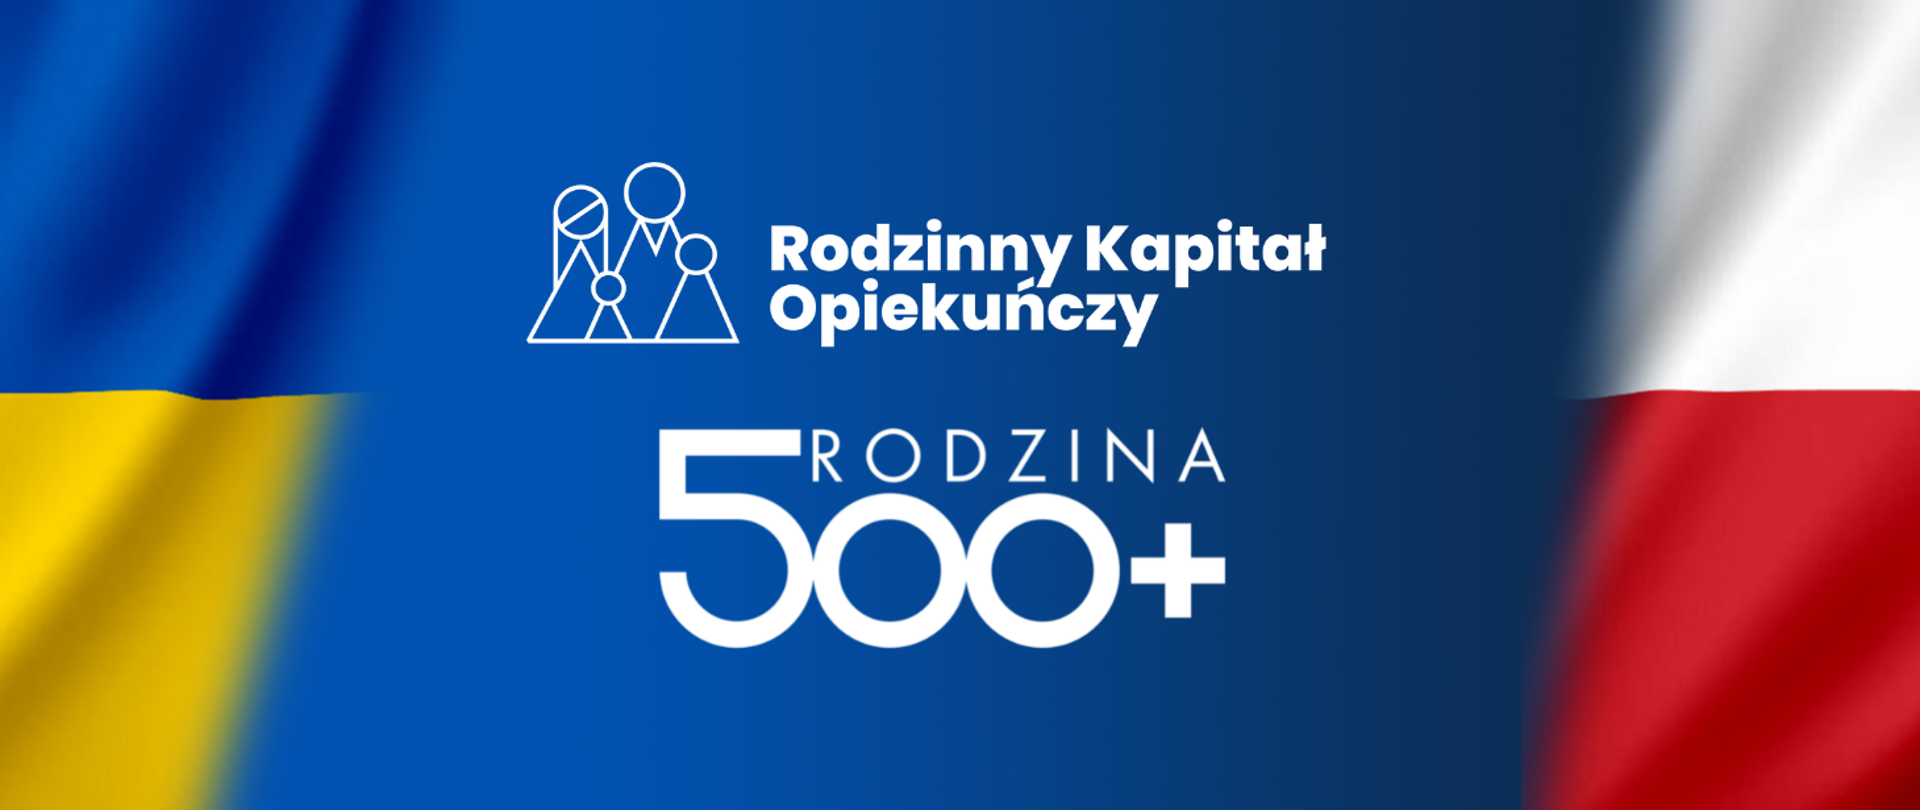 Logotyp programów: Rodzina 500+ oraz Rodzinny Kapitał Opiekuńczy